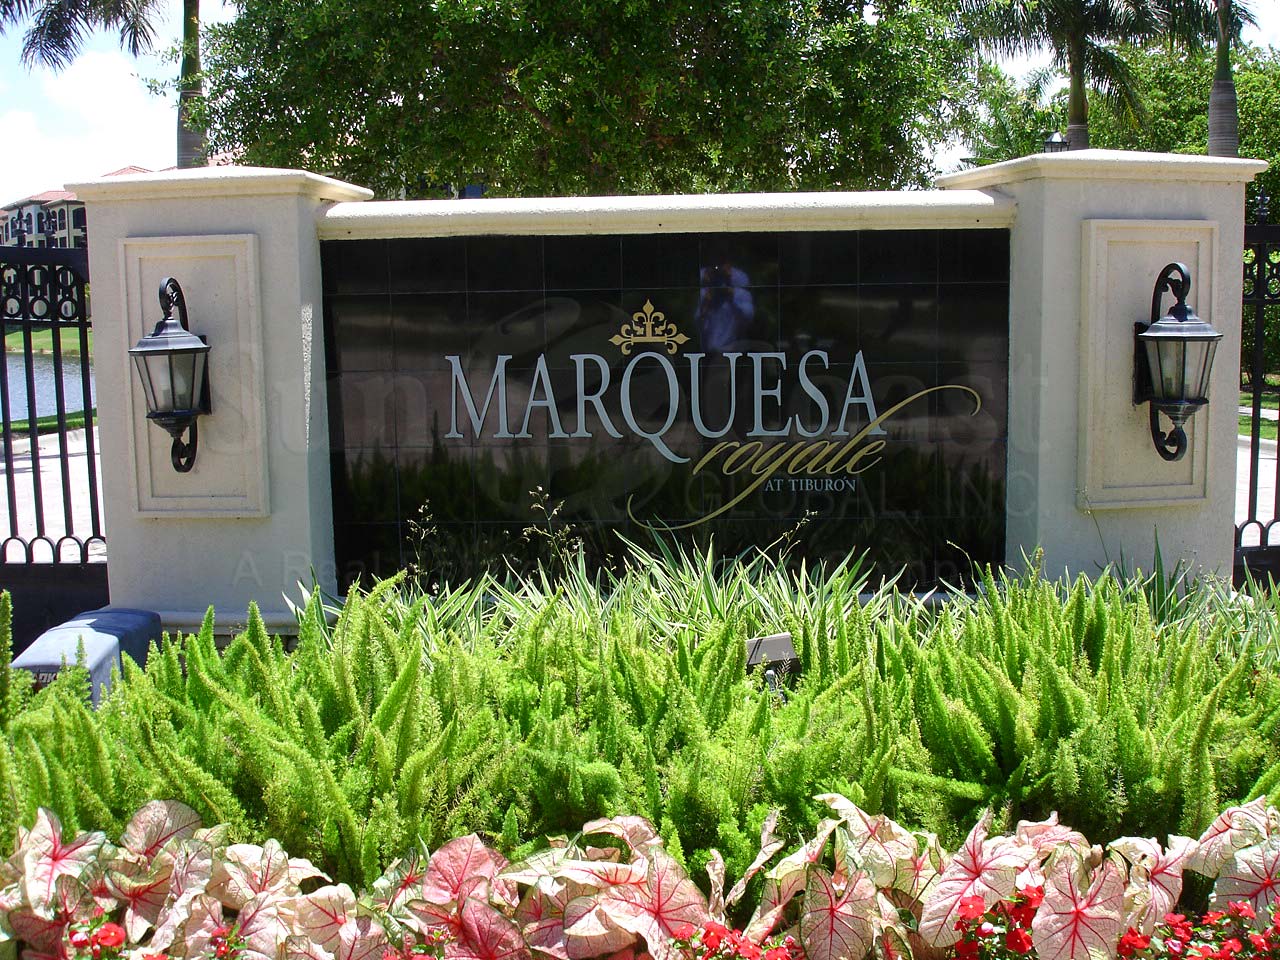 Marquesa Royale Signage